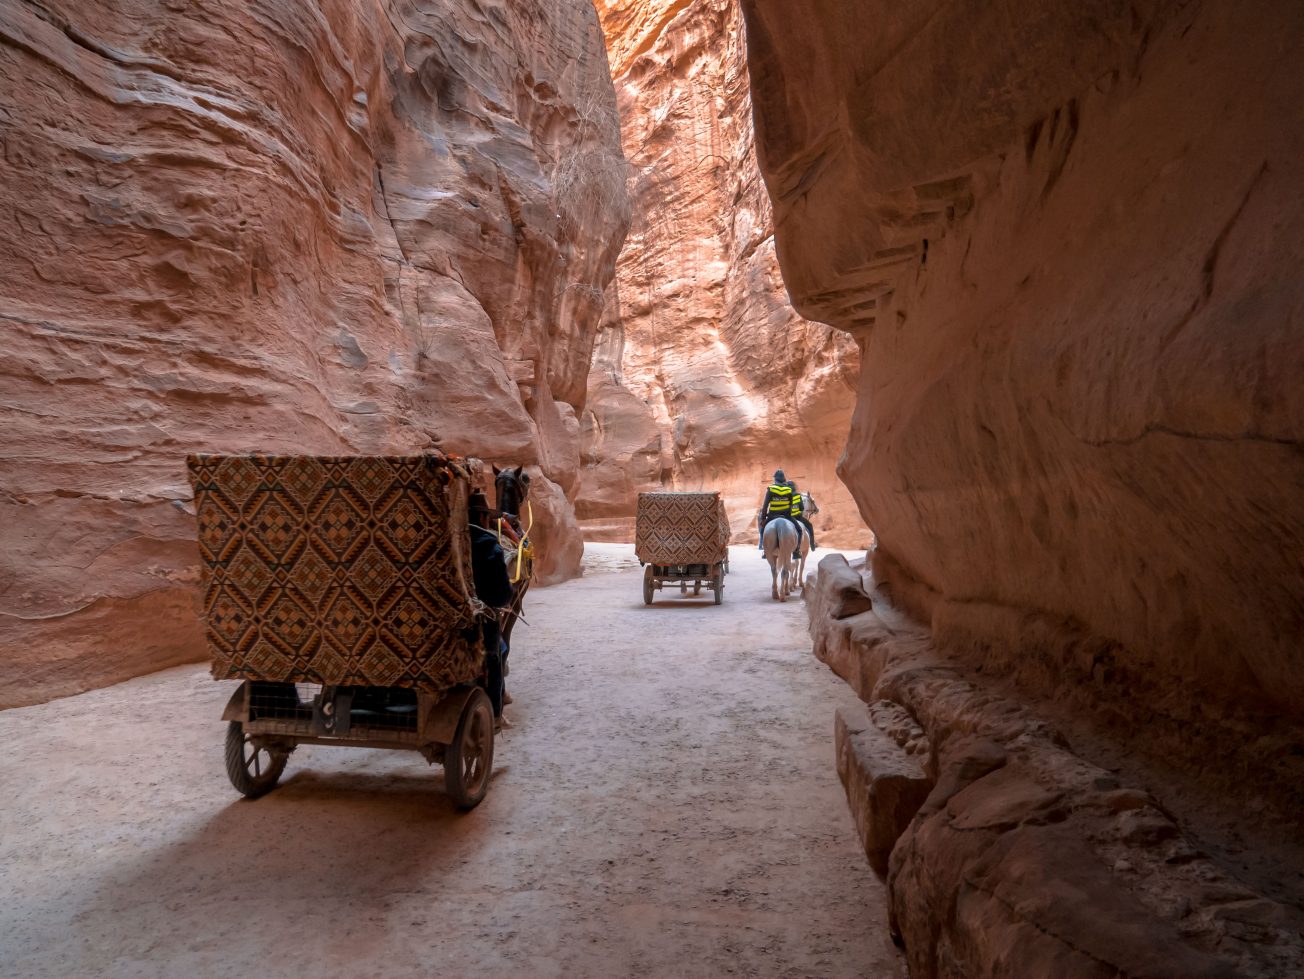 Cesta v skalnej rokline - Petra